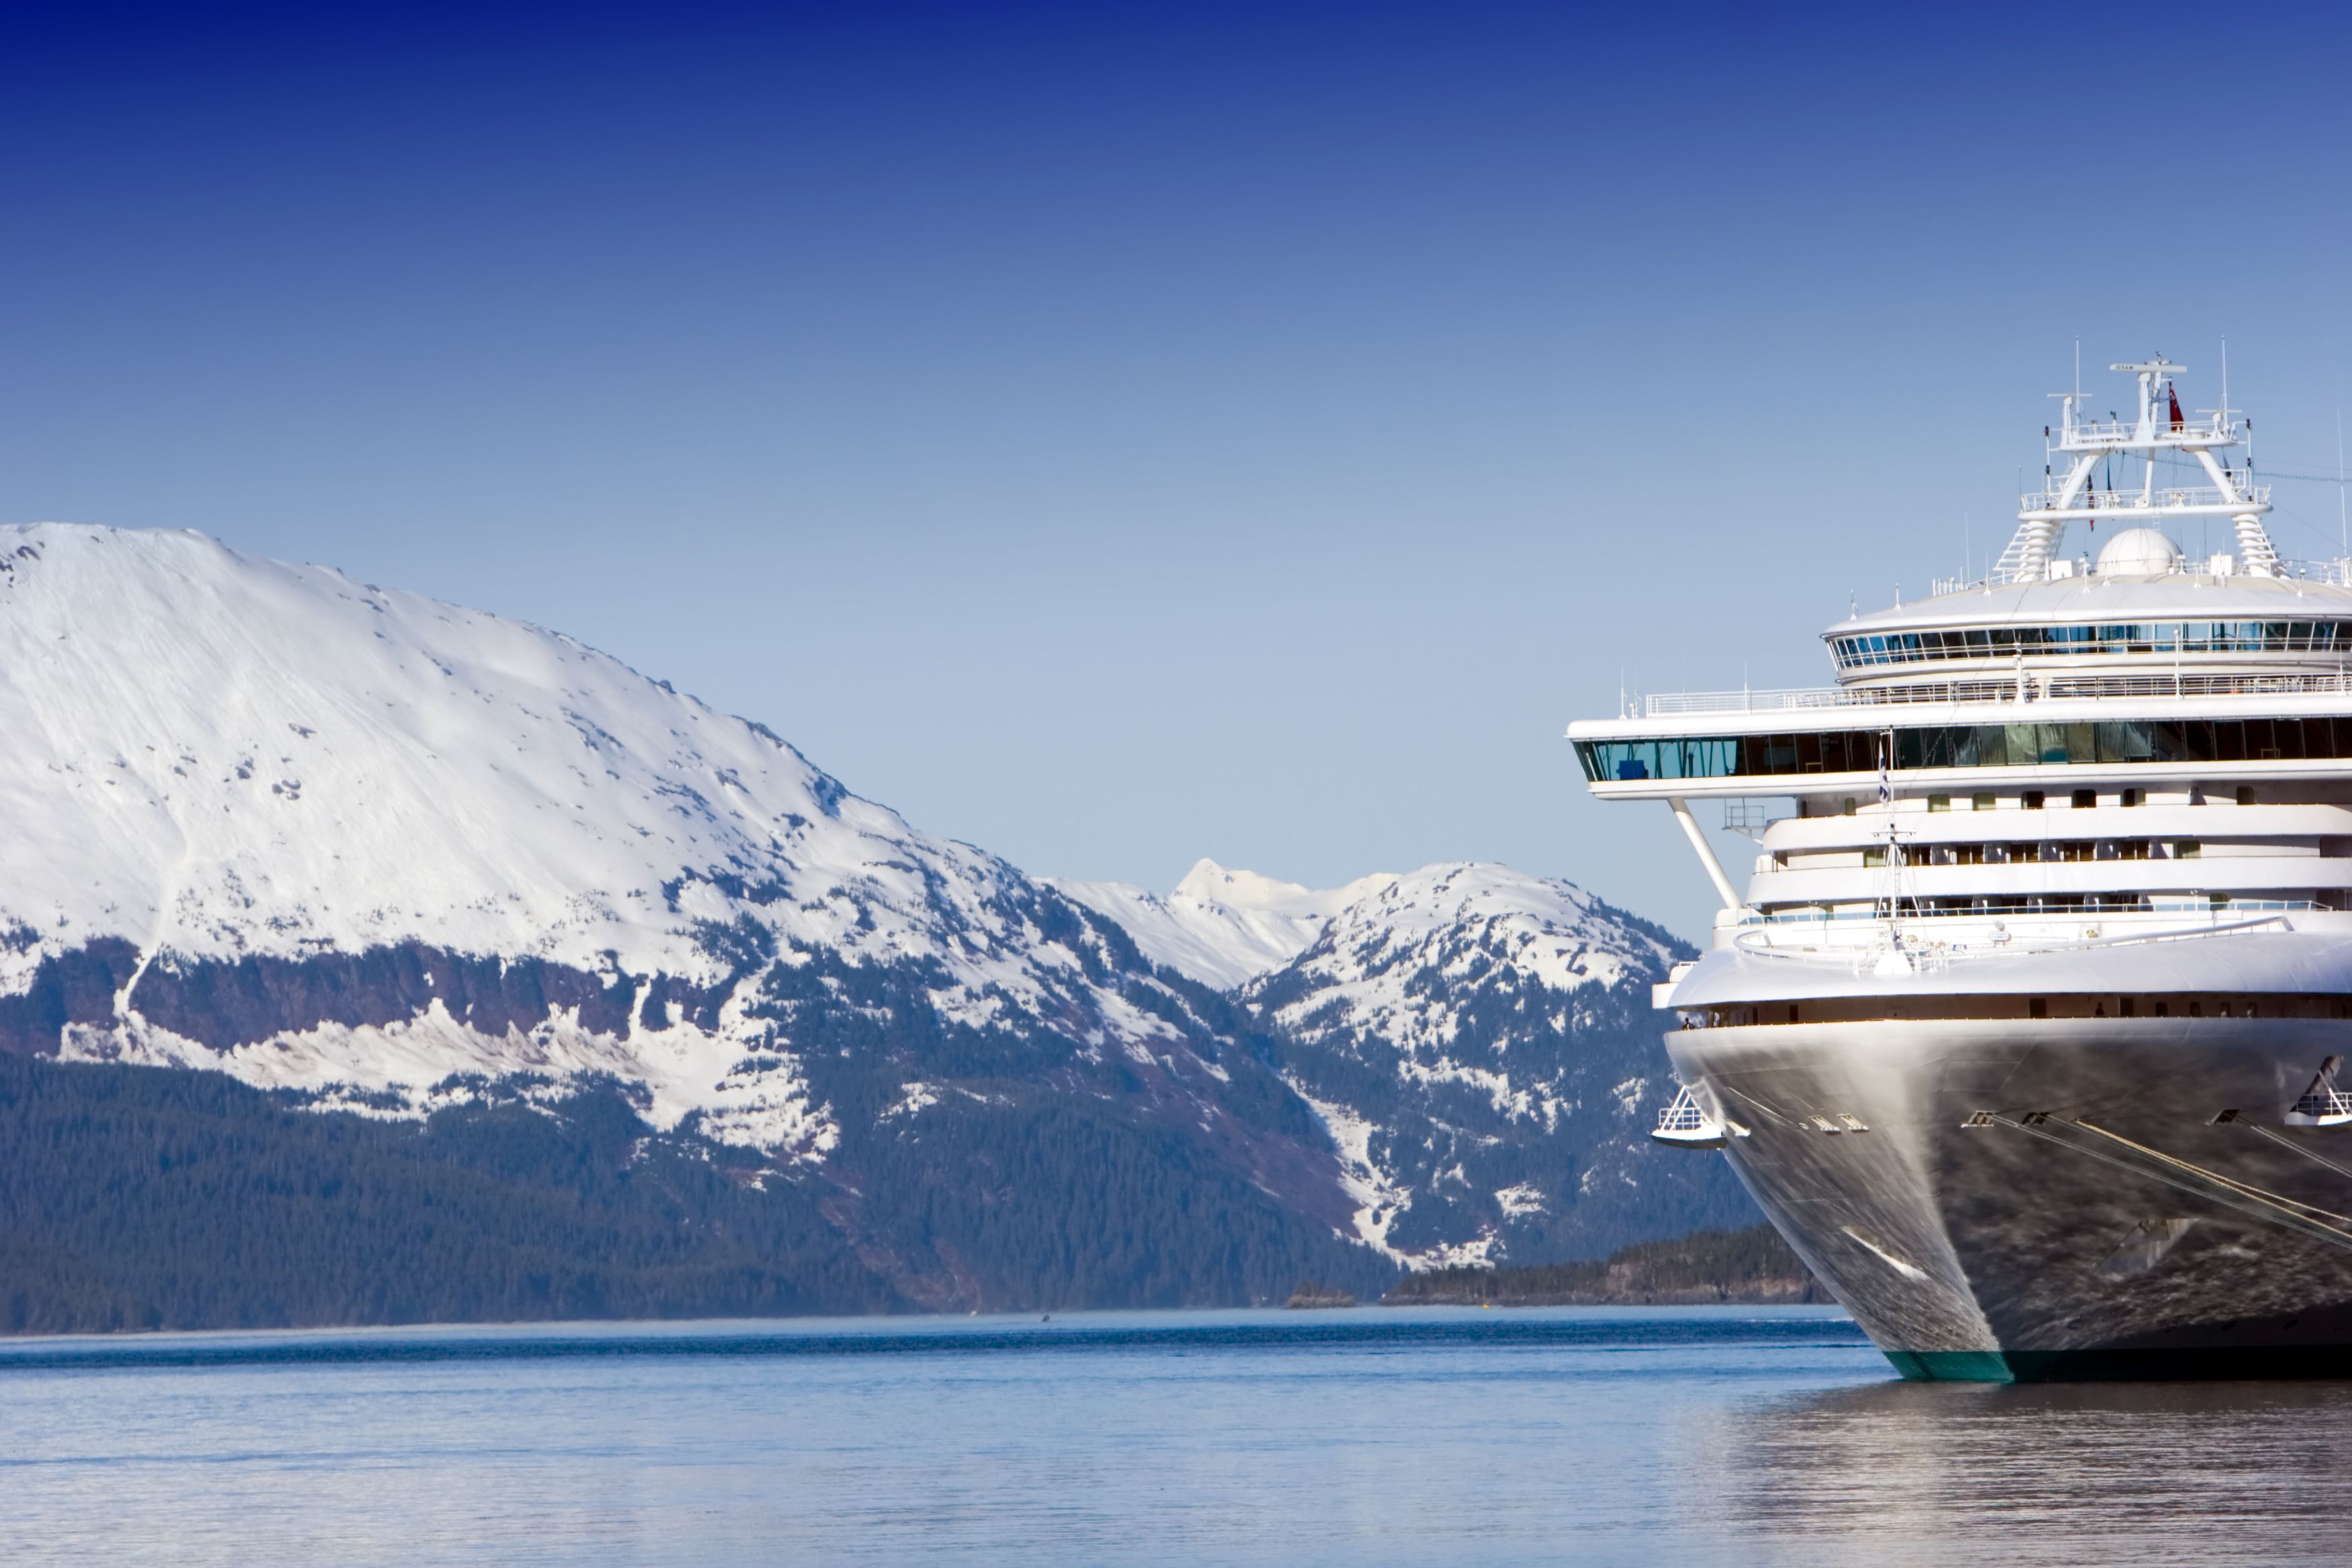 A cruise ship docked in Alaska